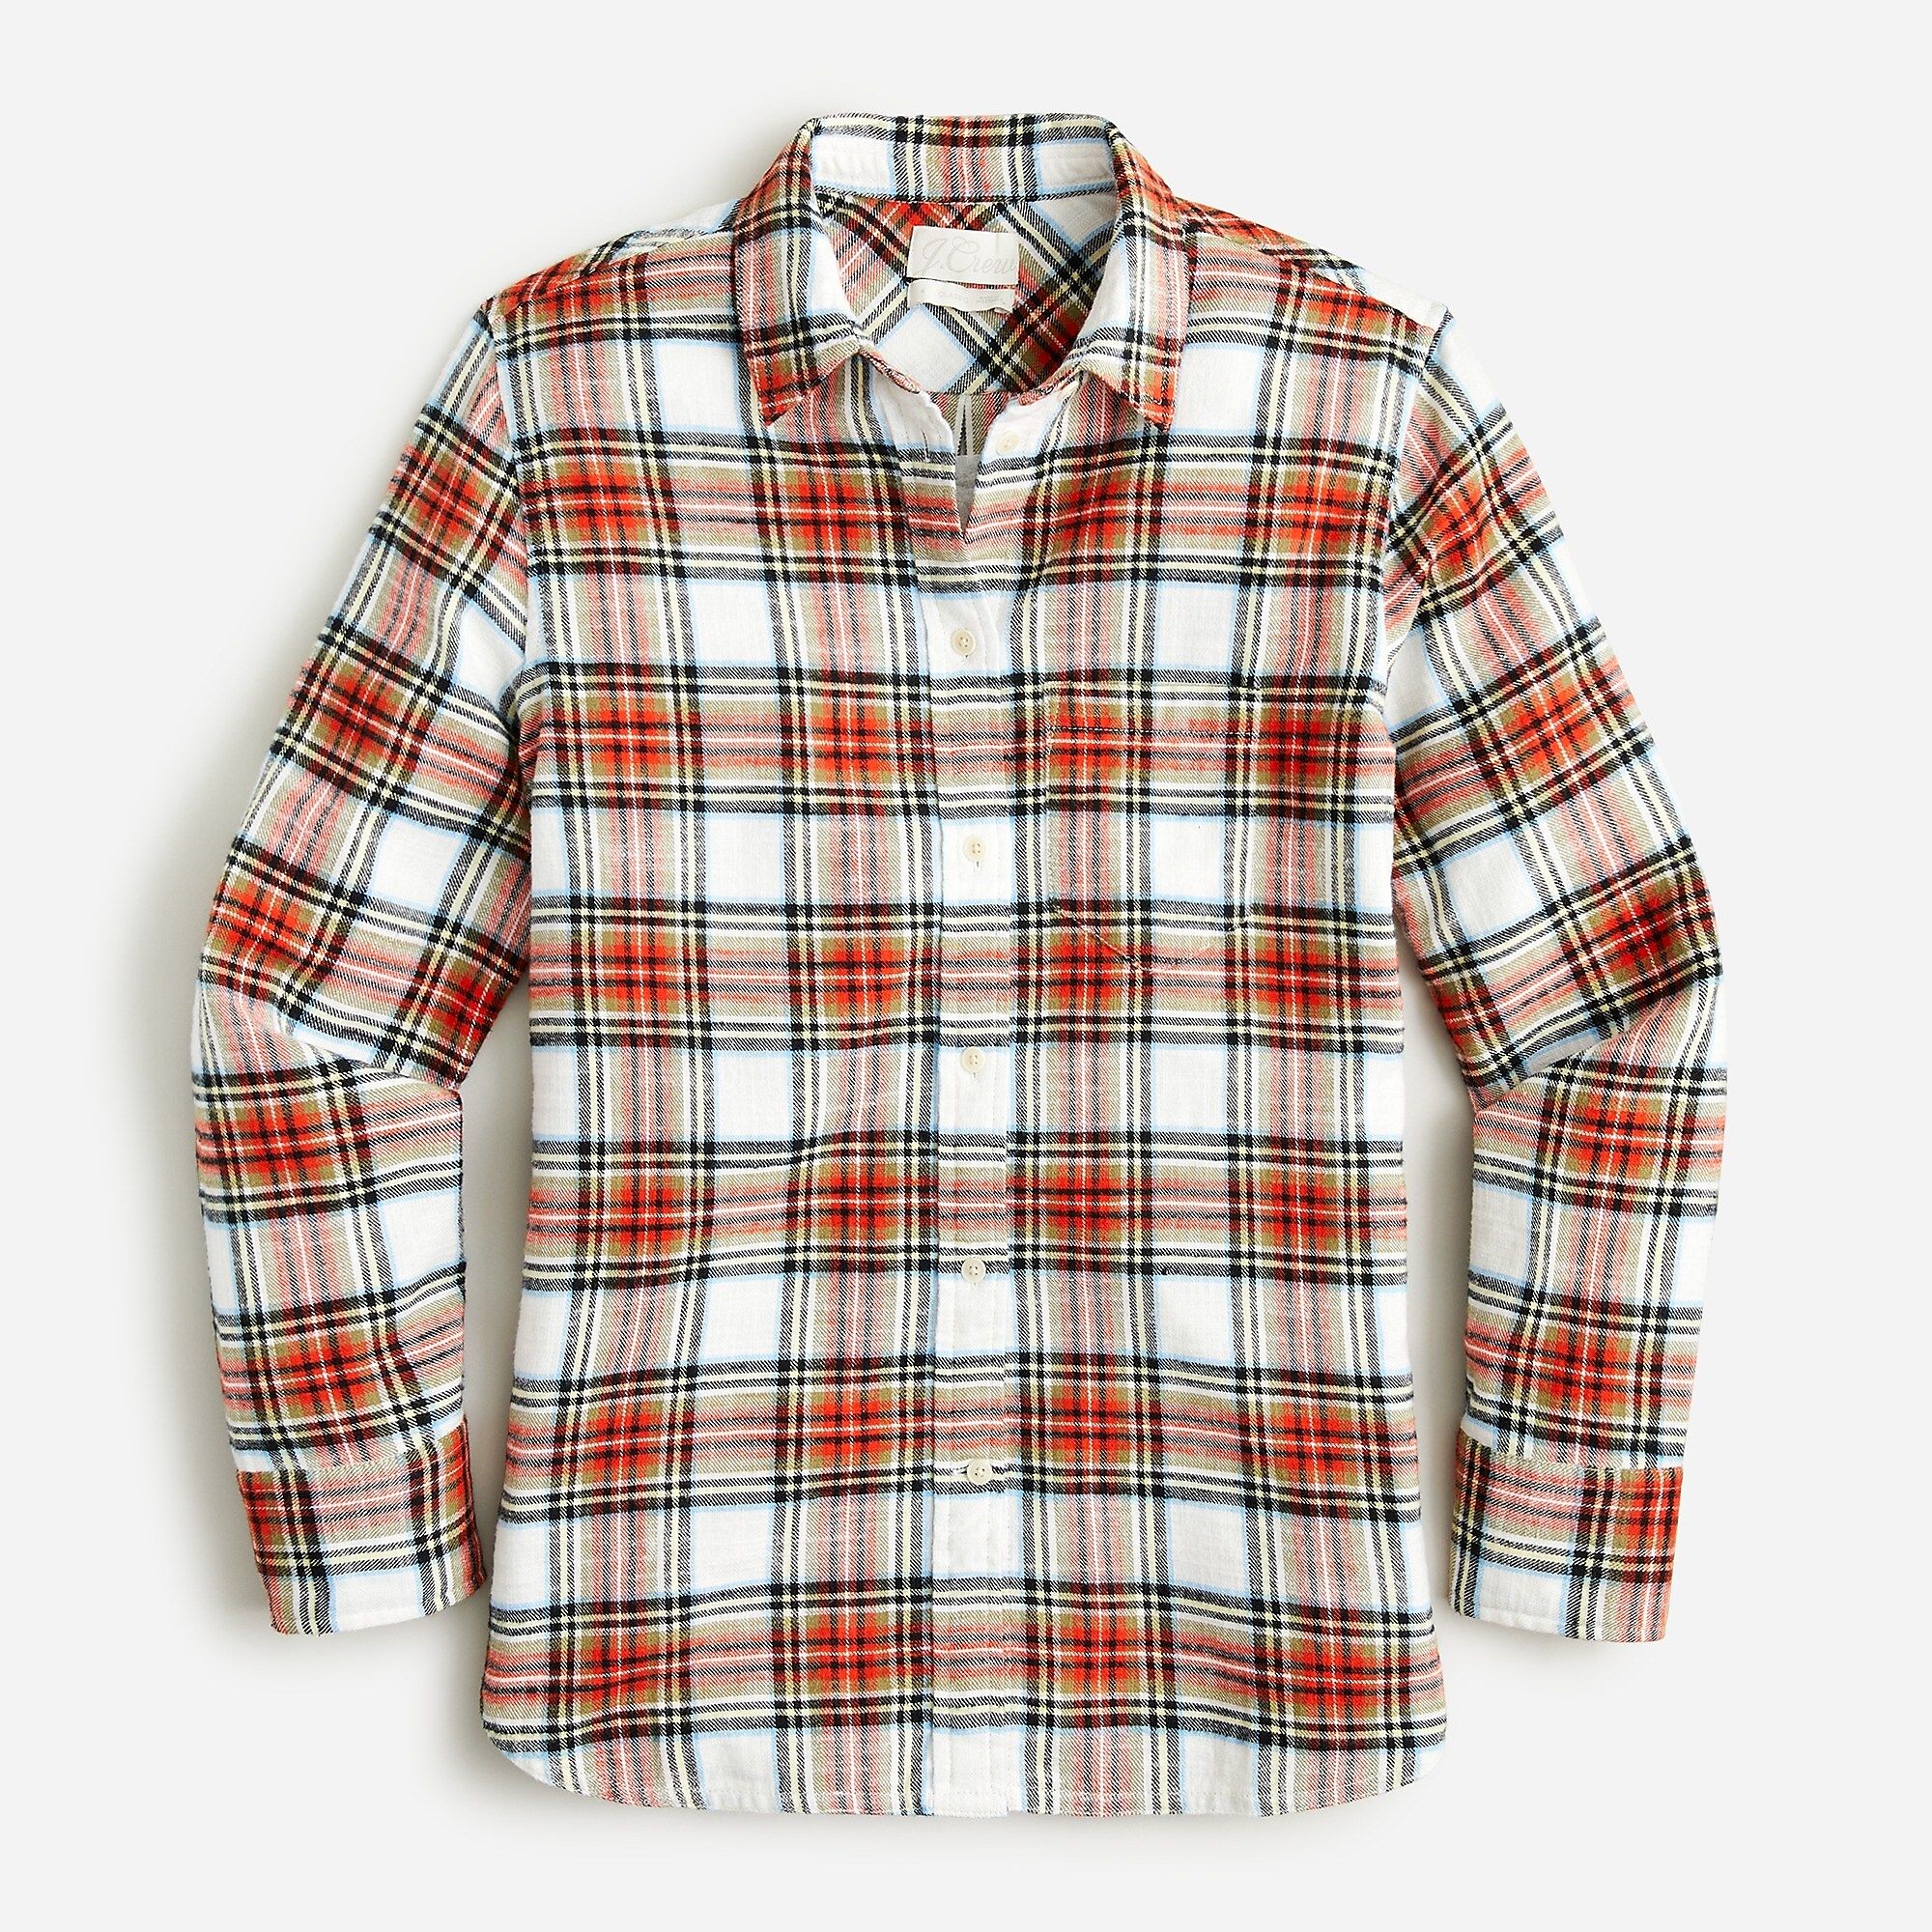 Classic-fit flannel shirt in Snowy Stewart tartan | J.Crew US